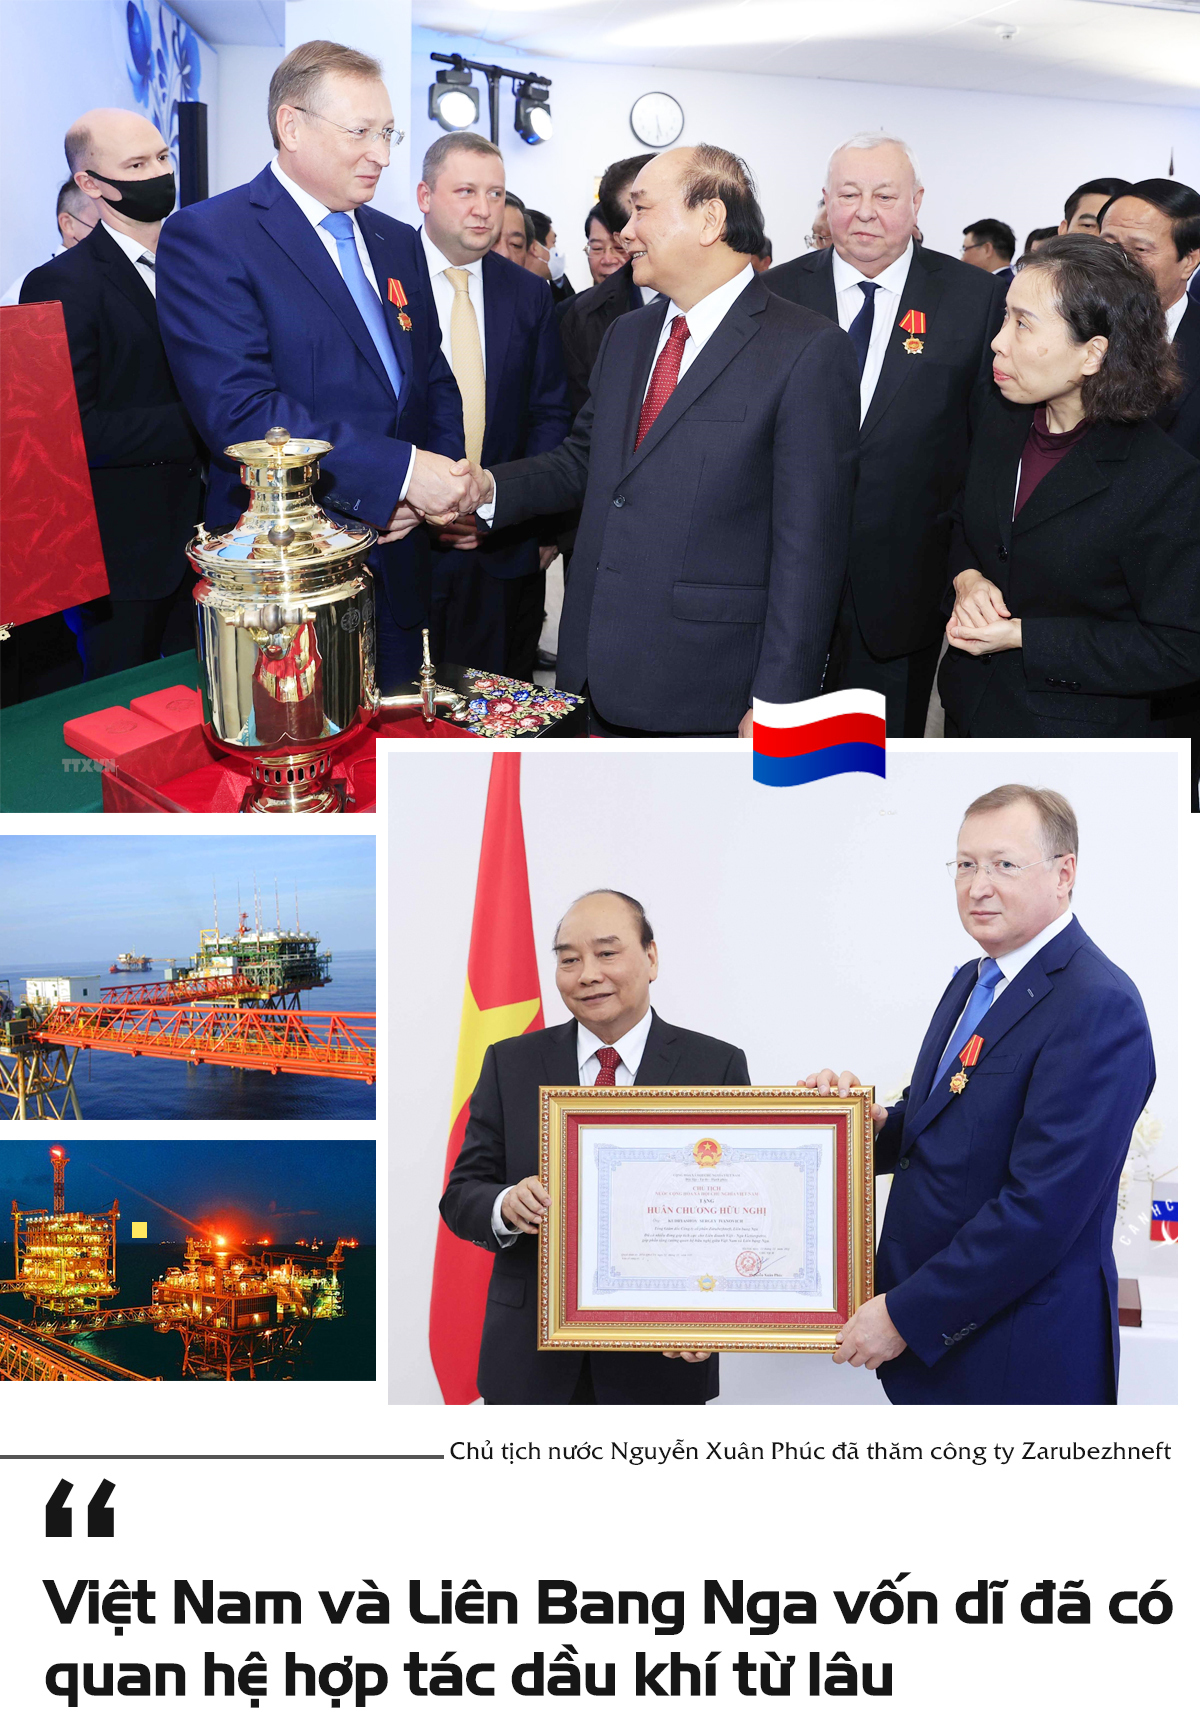 Chuyến thăm Nga “độc nhất vô nhị” của Chủ tịch nước Nguyễn Xuân Phúc